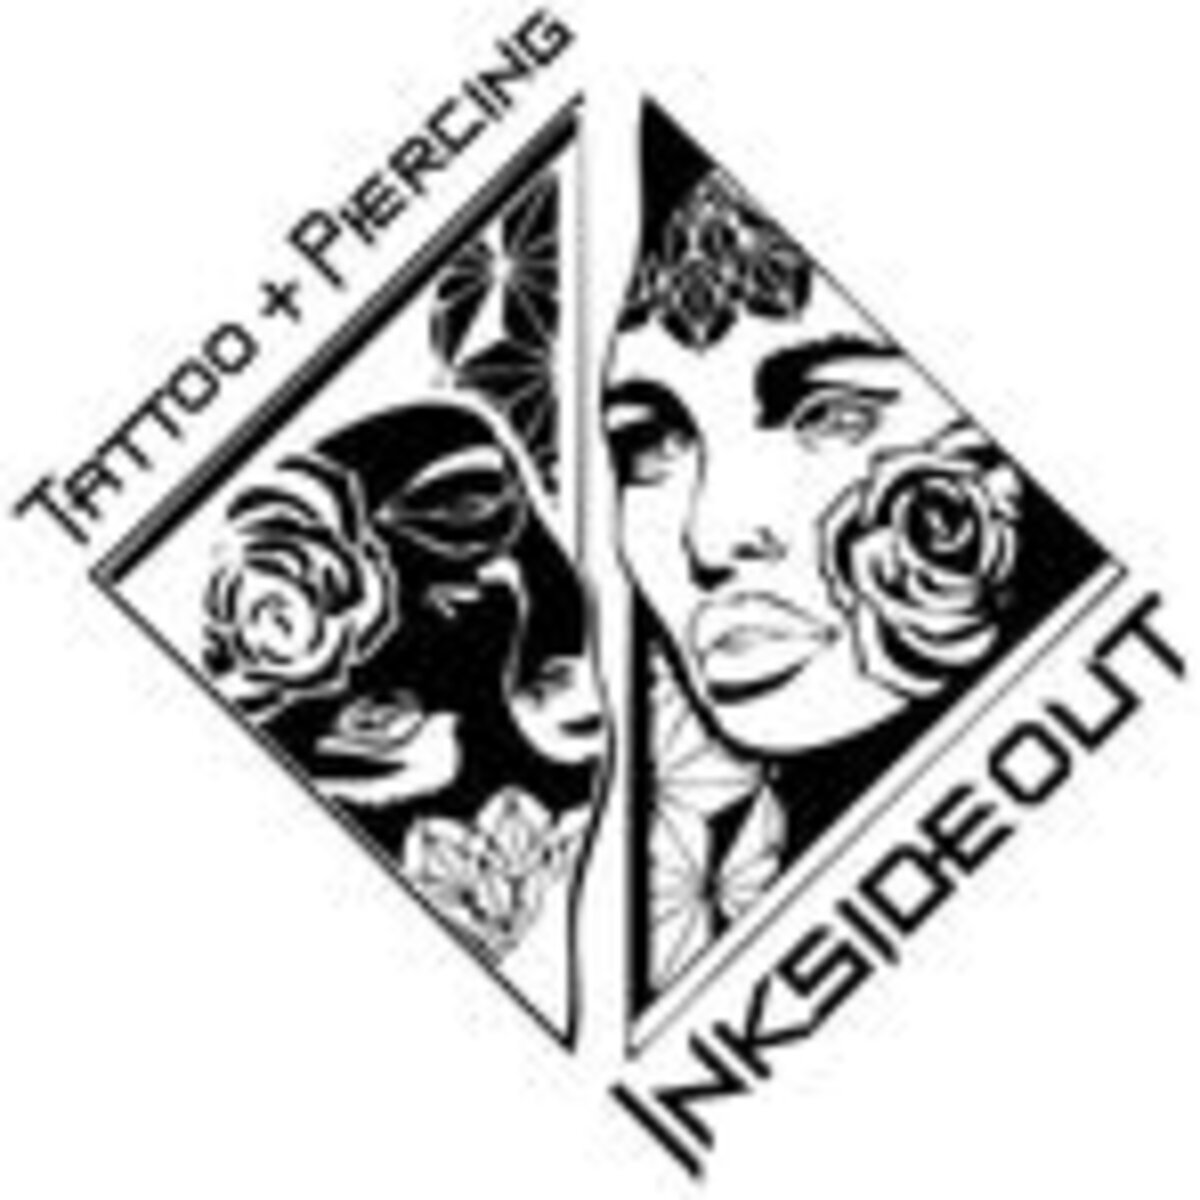 inksideout_logo